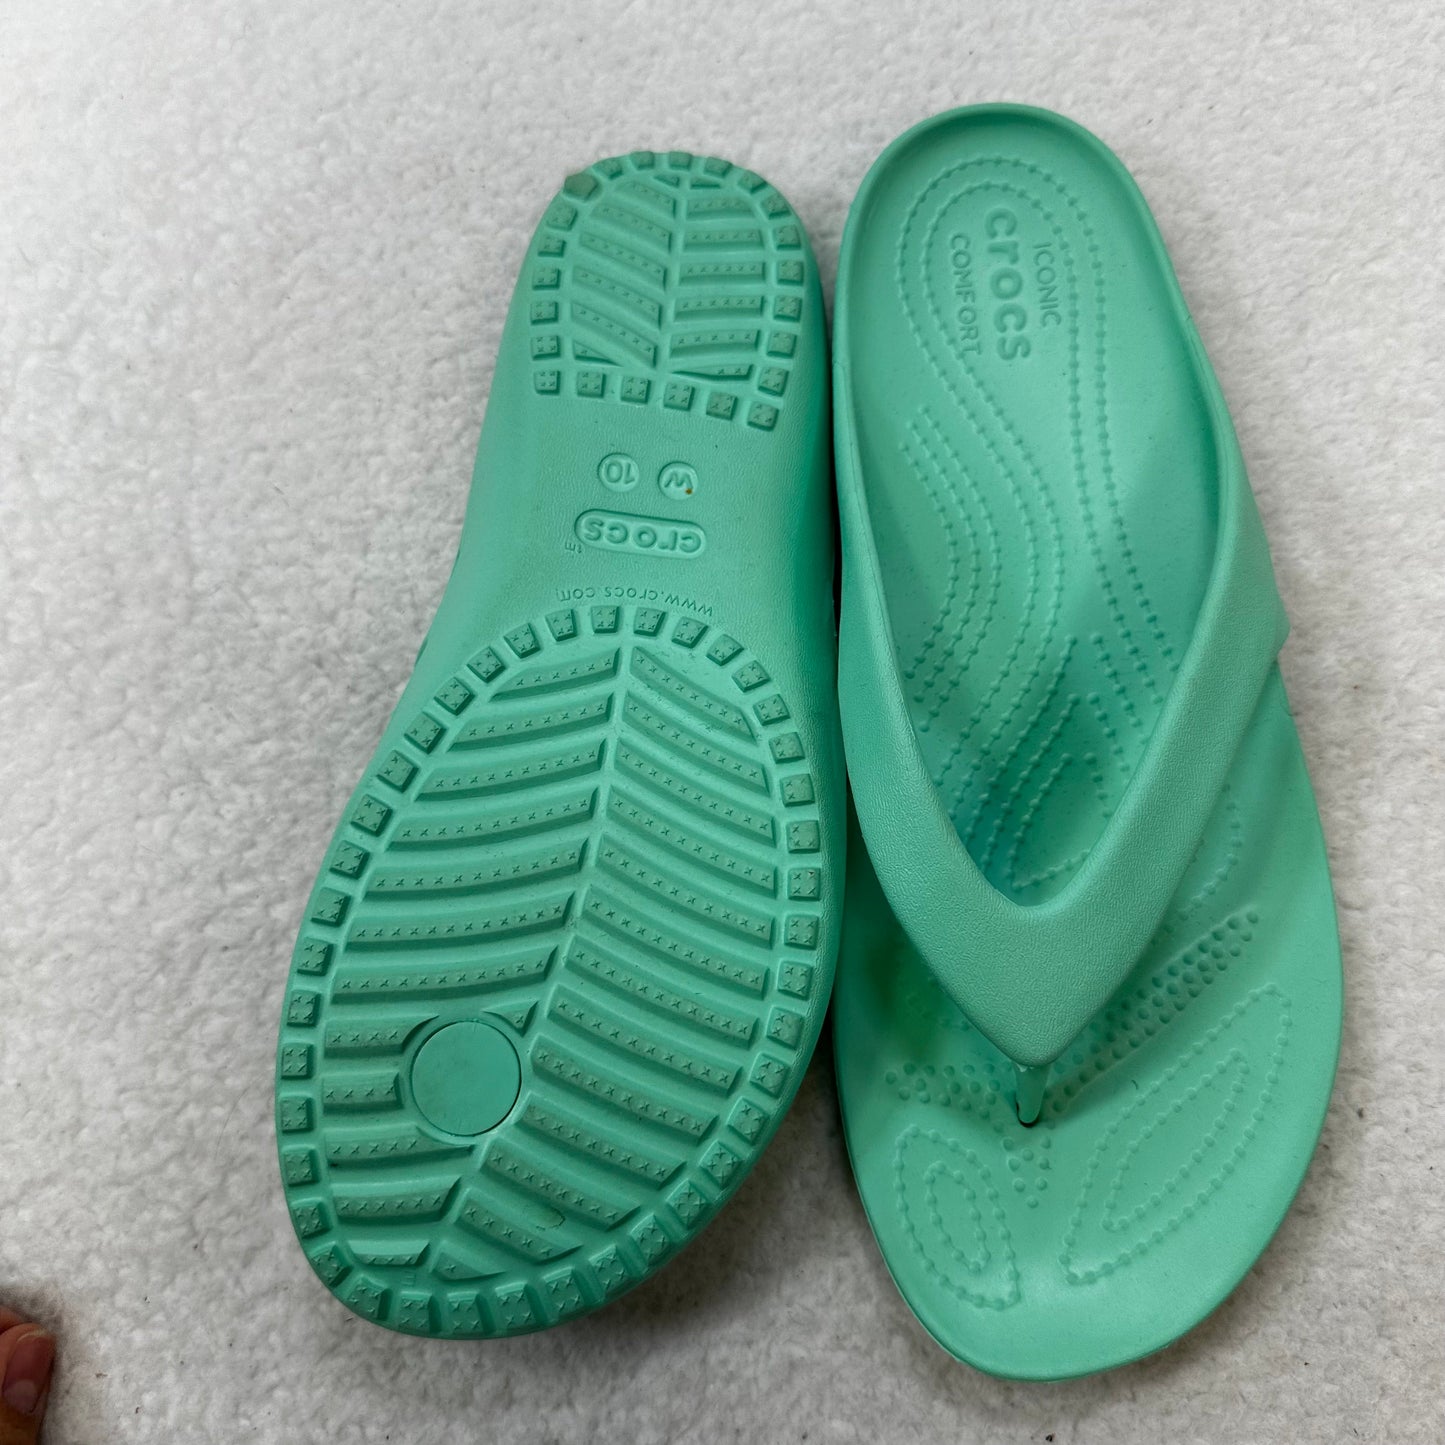 Mint Sandals Flip Flops Crocs, Size 10